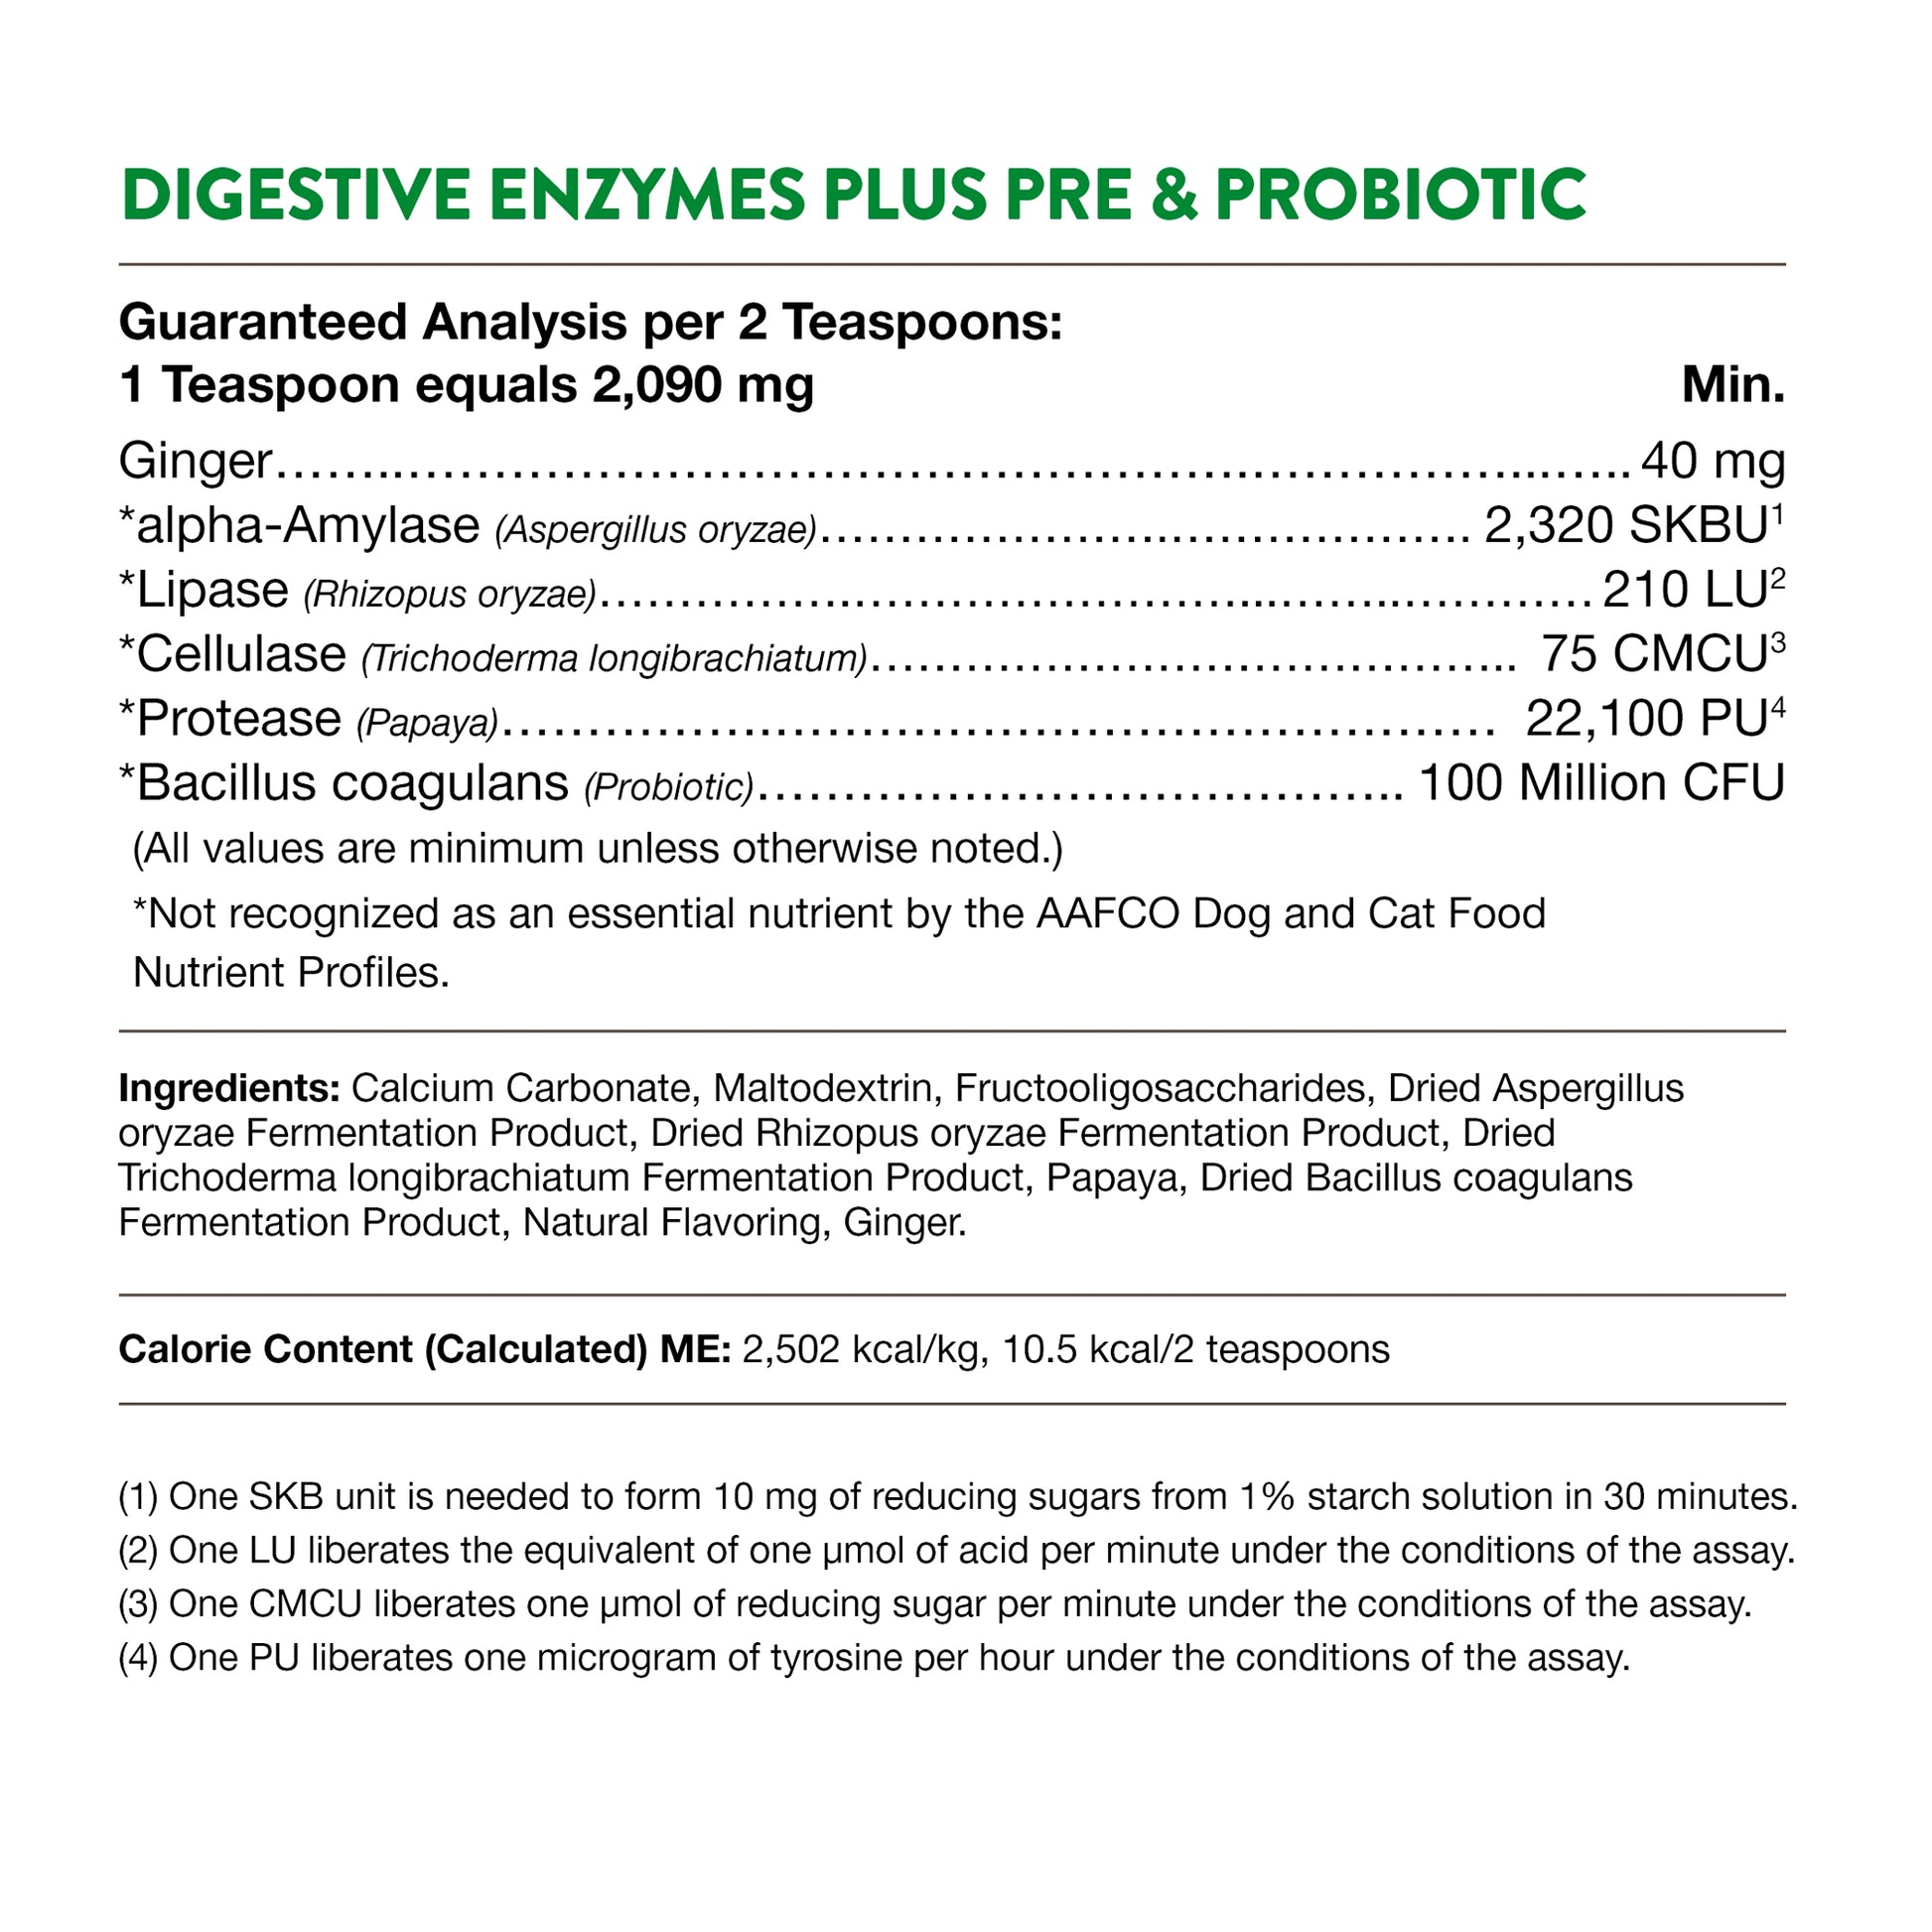 NaturVet Digestive Enzymes Plus Probiotiques Complément Alimentaire pour  Chiens à mâcher 90 pièces